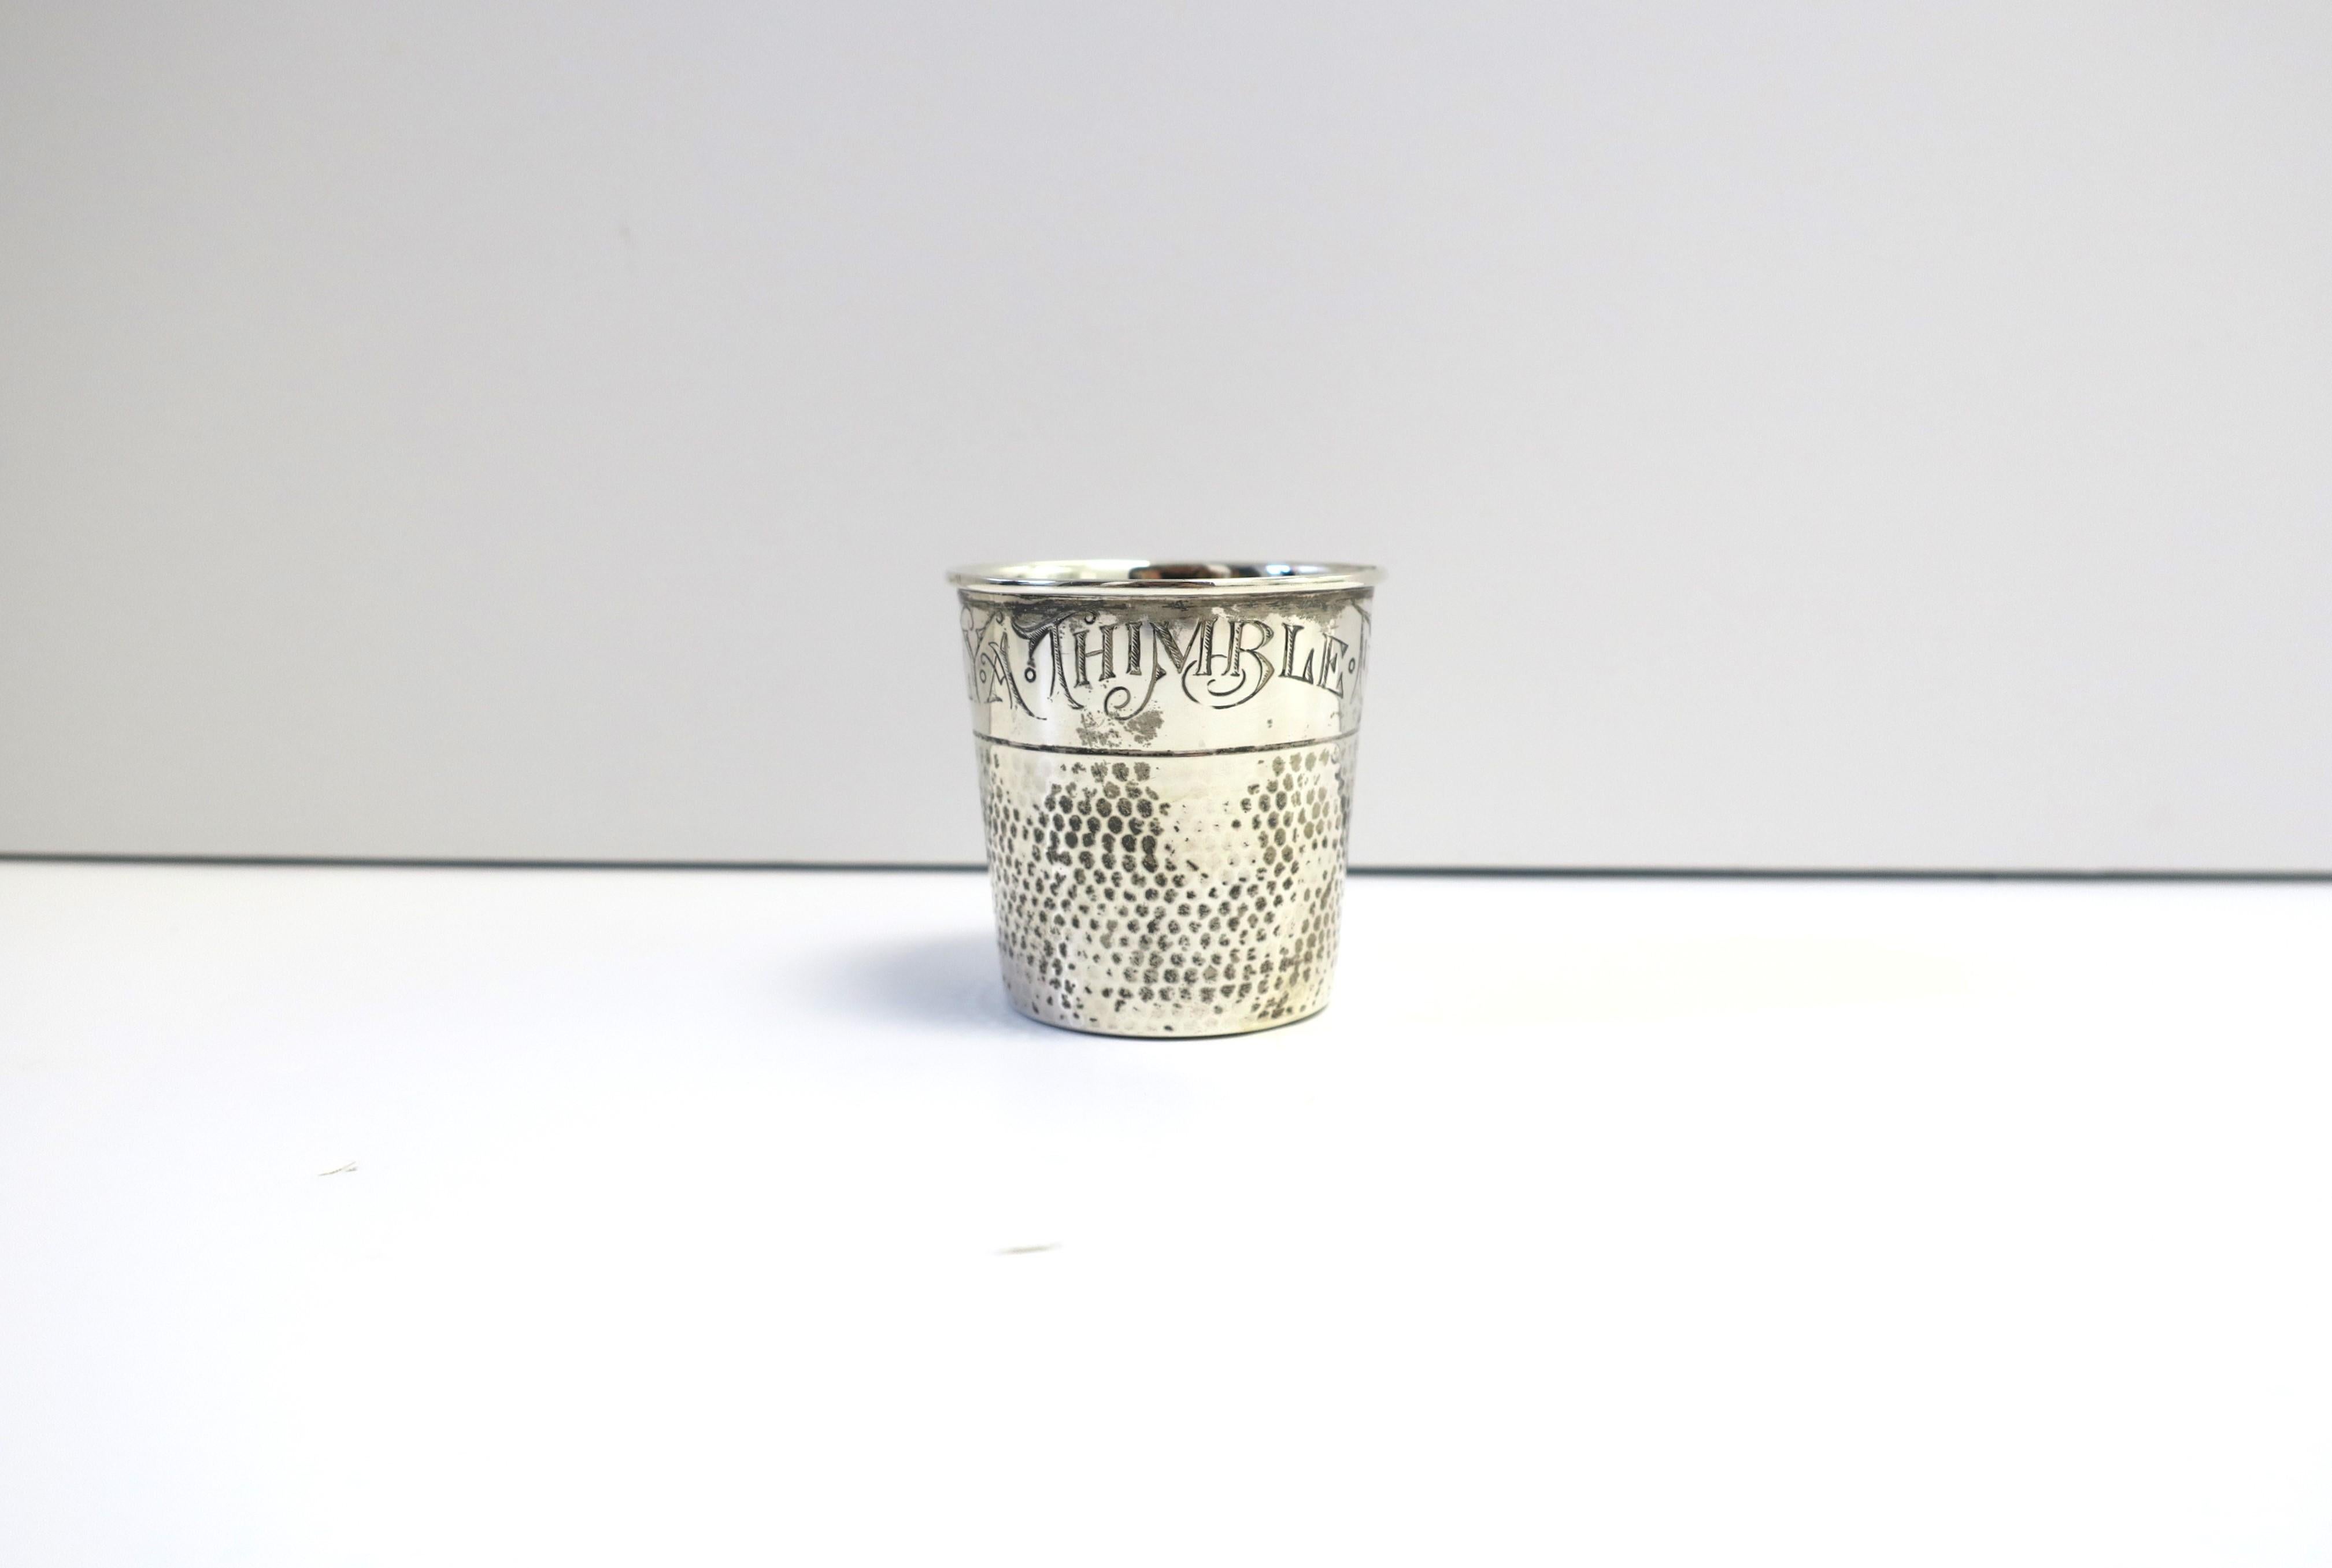 Un verre à shot jigger en argent sterling, période Art Nouveau, par E.G. Webster & Sons, vers la fin du XIXe siècle, États-Unis. Pièce en forme de dé à coudre, d'époque Art nouveau, avec gravure, jeu de mots sur l'expression 